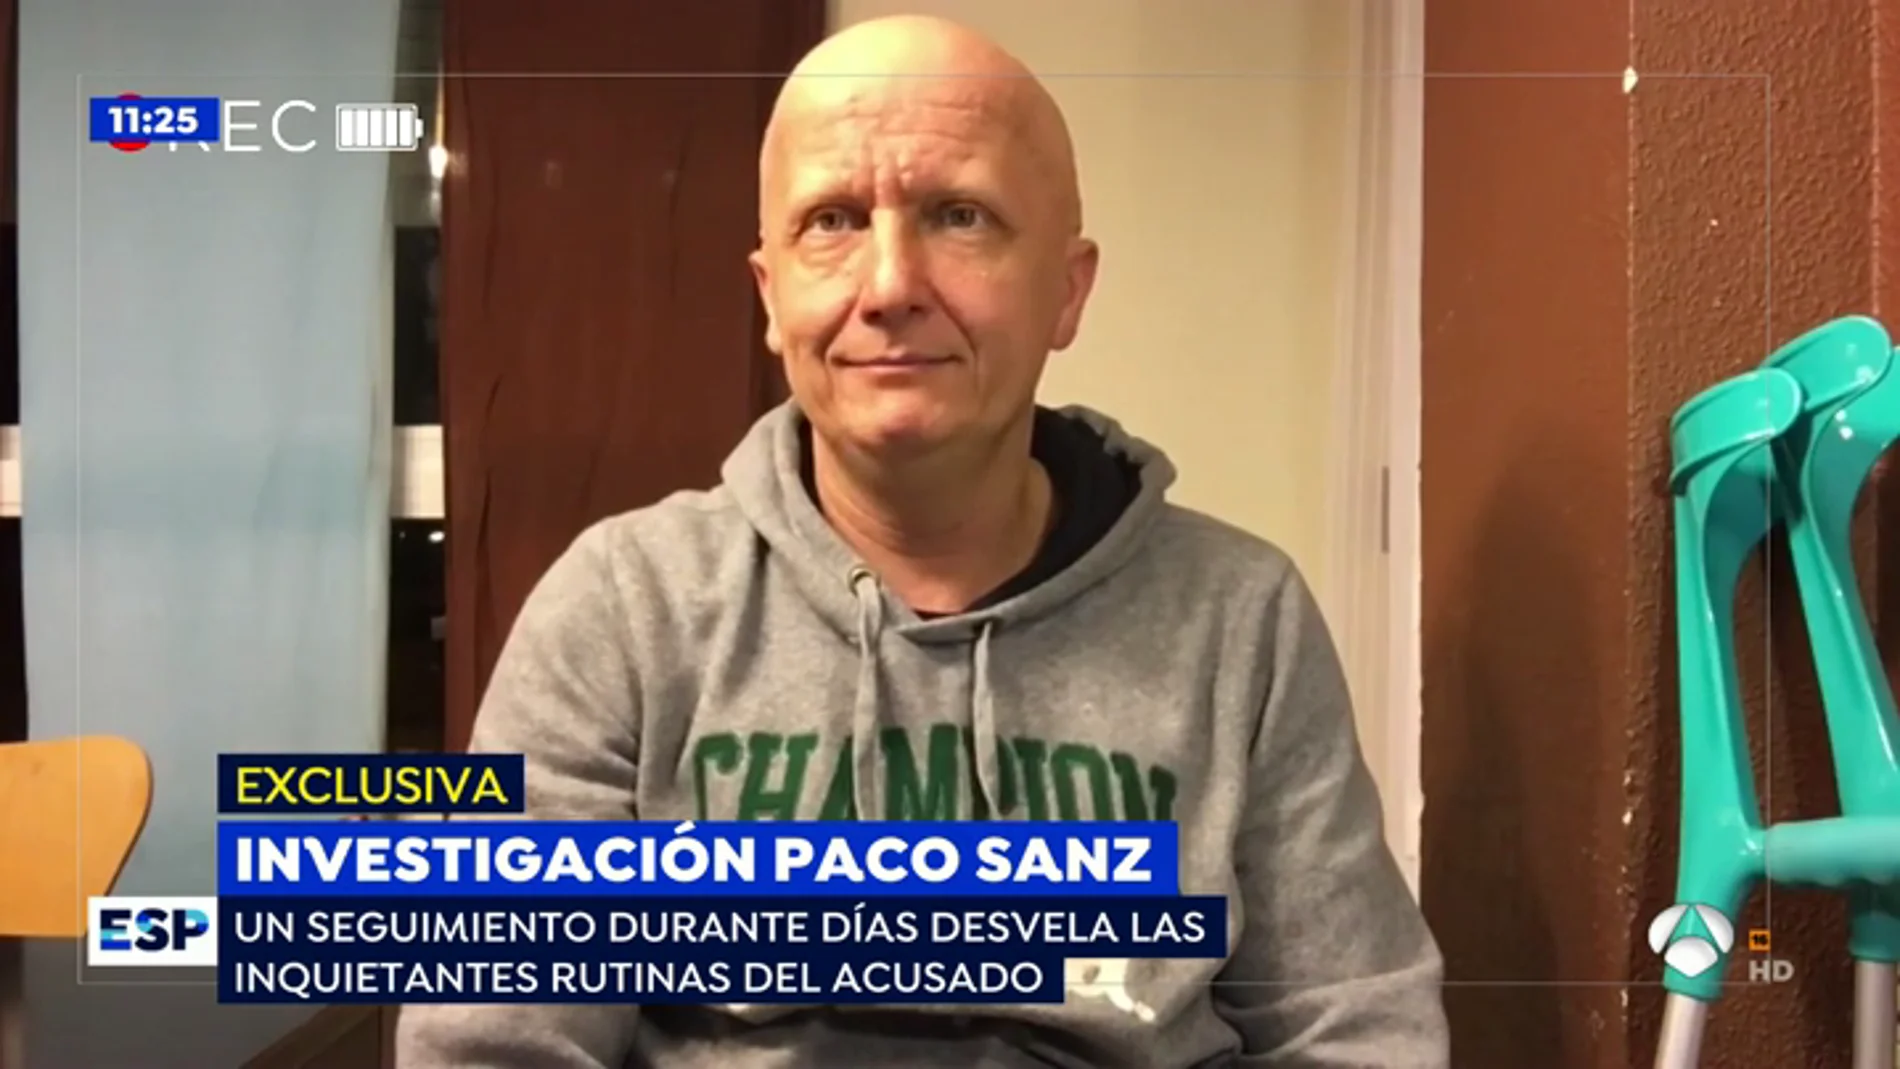 La estafa de Paco Sanz